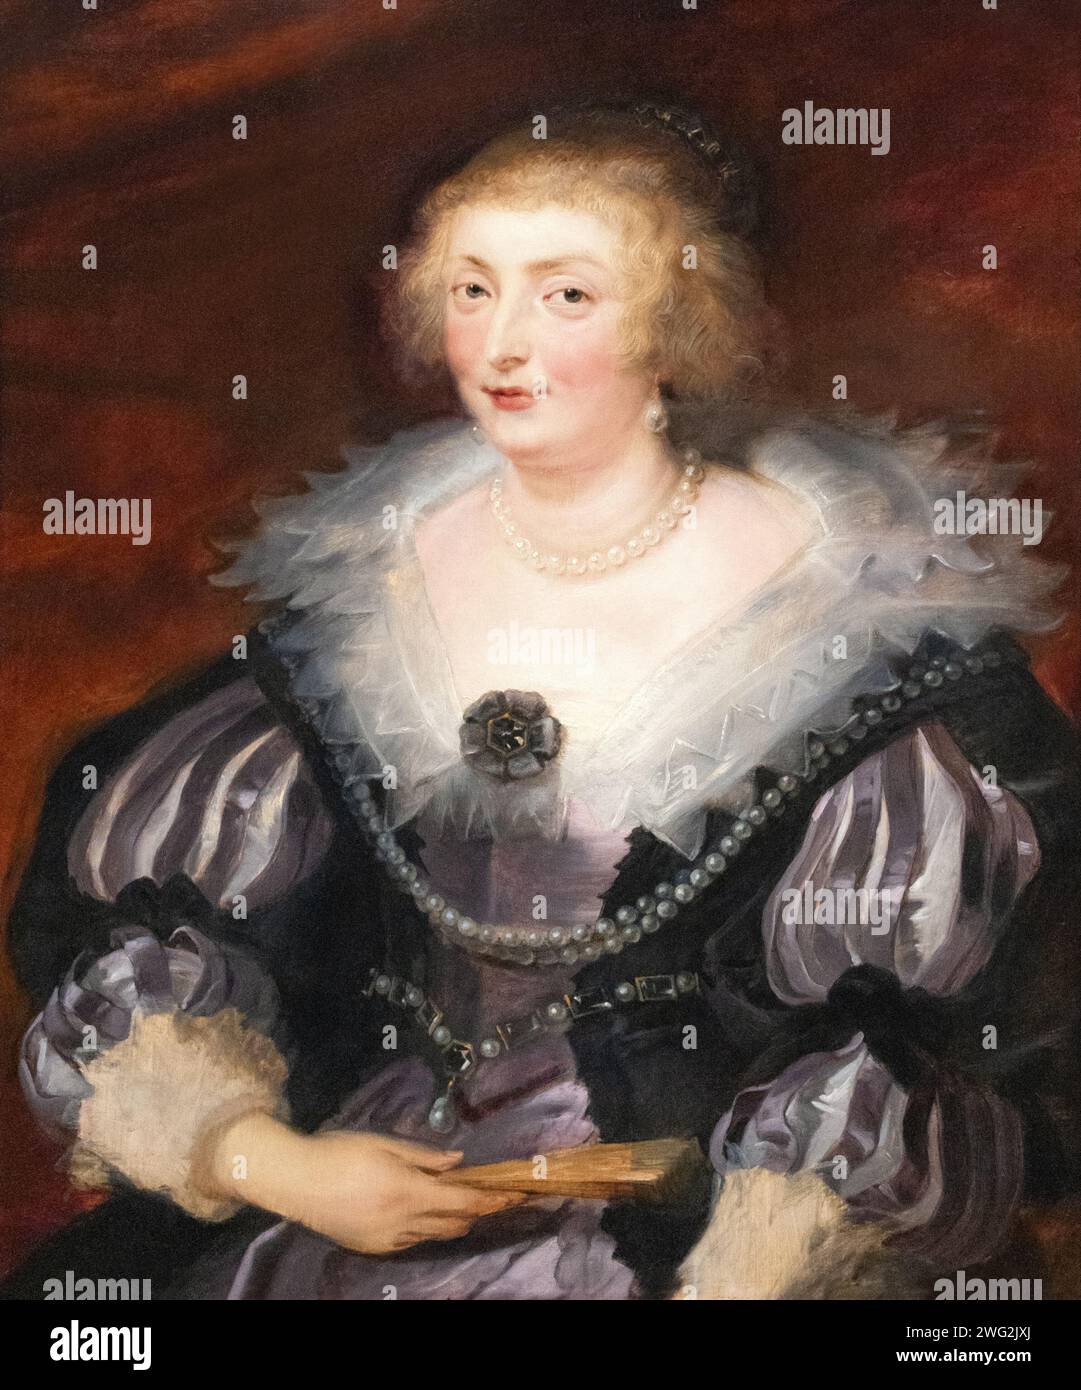 Sir Peter Paul Rubens dipinge, "Ritratto di una signora" 1625; Ritratto di Rubens, l'identità è sconosciuta. ritratto di una donna del xvii secolo. Arte in stile barocco. Foto Stock